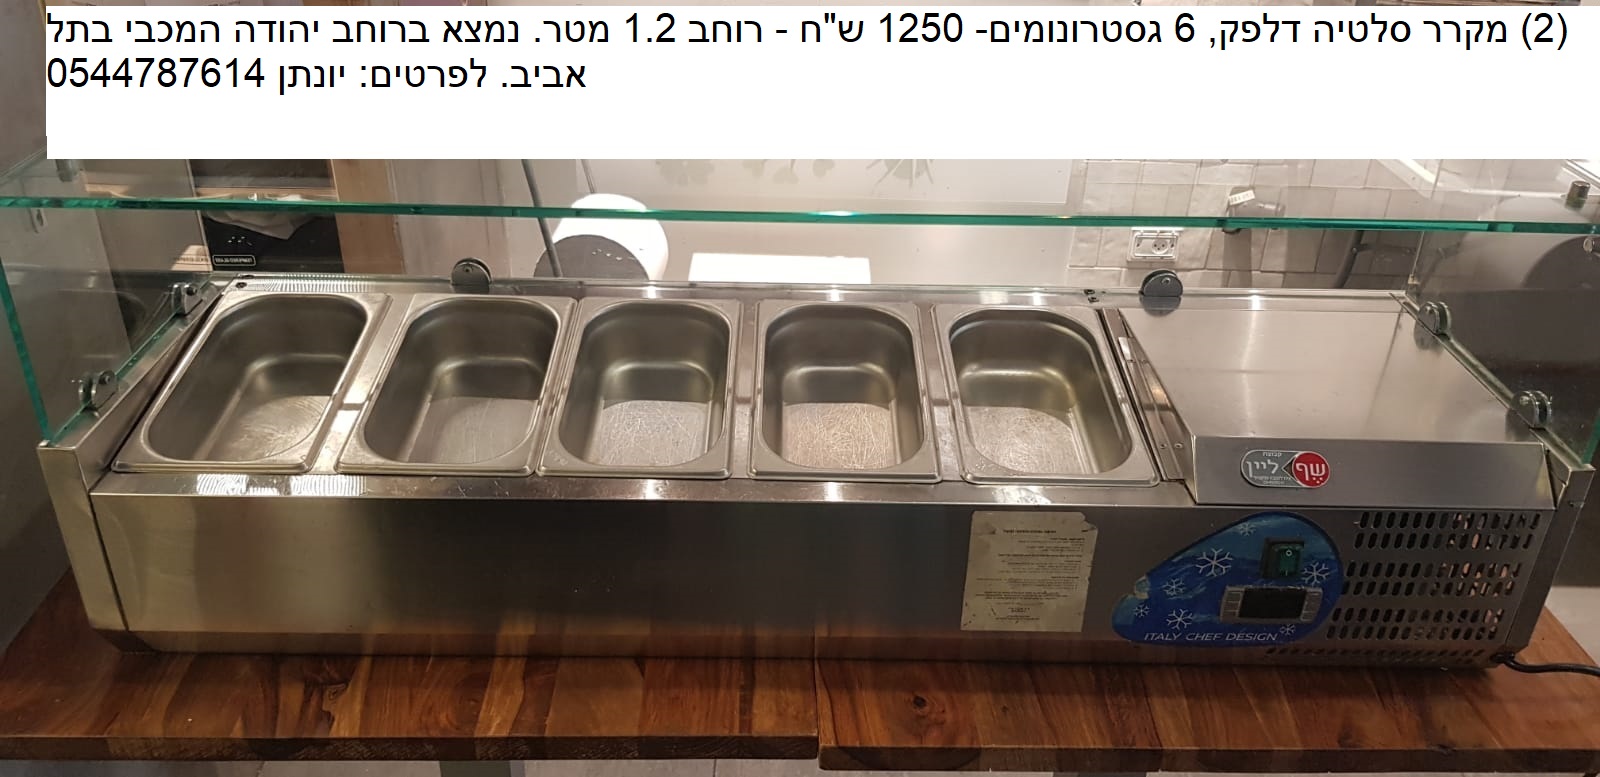 תמונה 1 ,מקרר סלטים למכירה בתל אביב עסקים למכירה/למסירה  בתי קפה ומסעדות